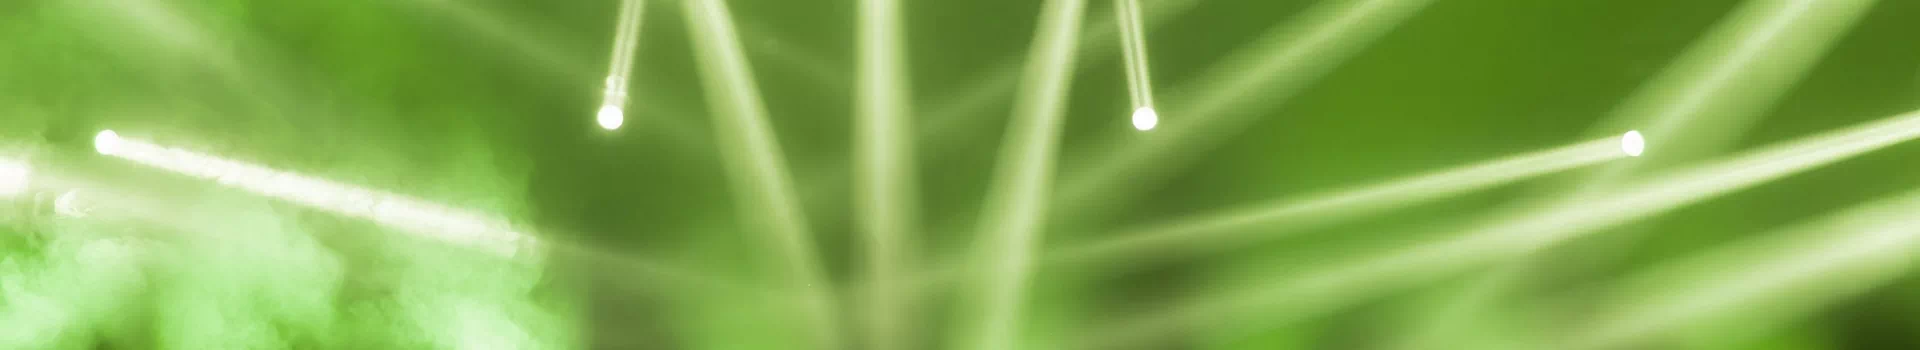 banner - zielone światła lasery dyskoteki